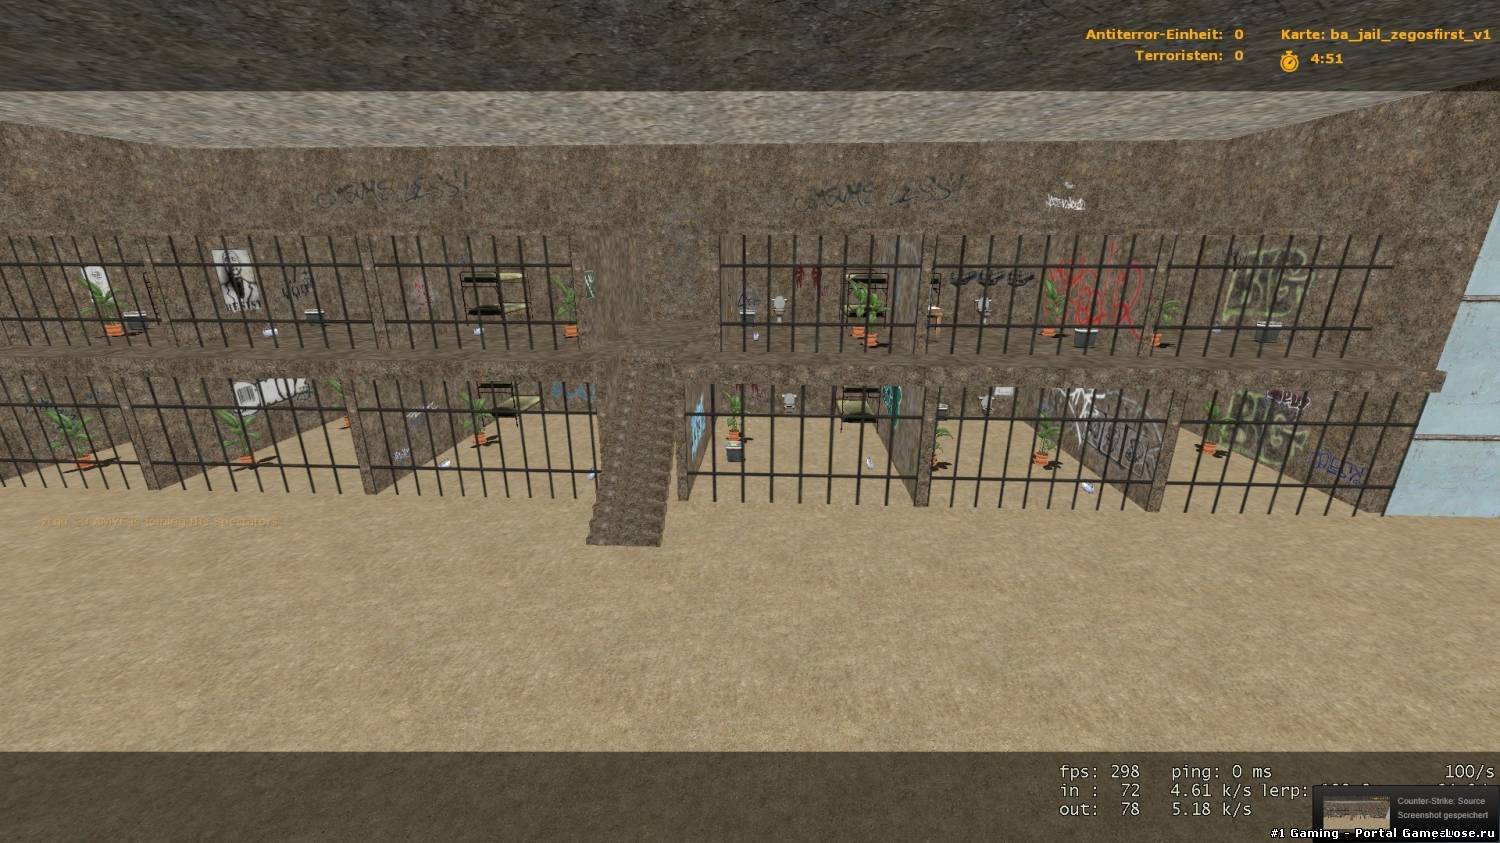 Ba jail zegosfirst для CSS